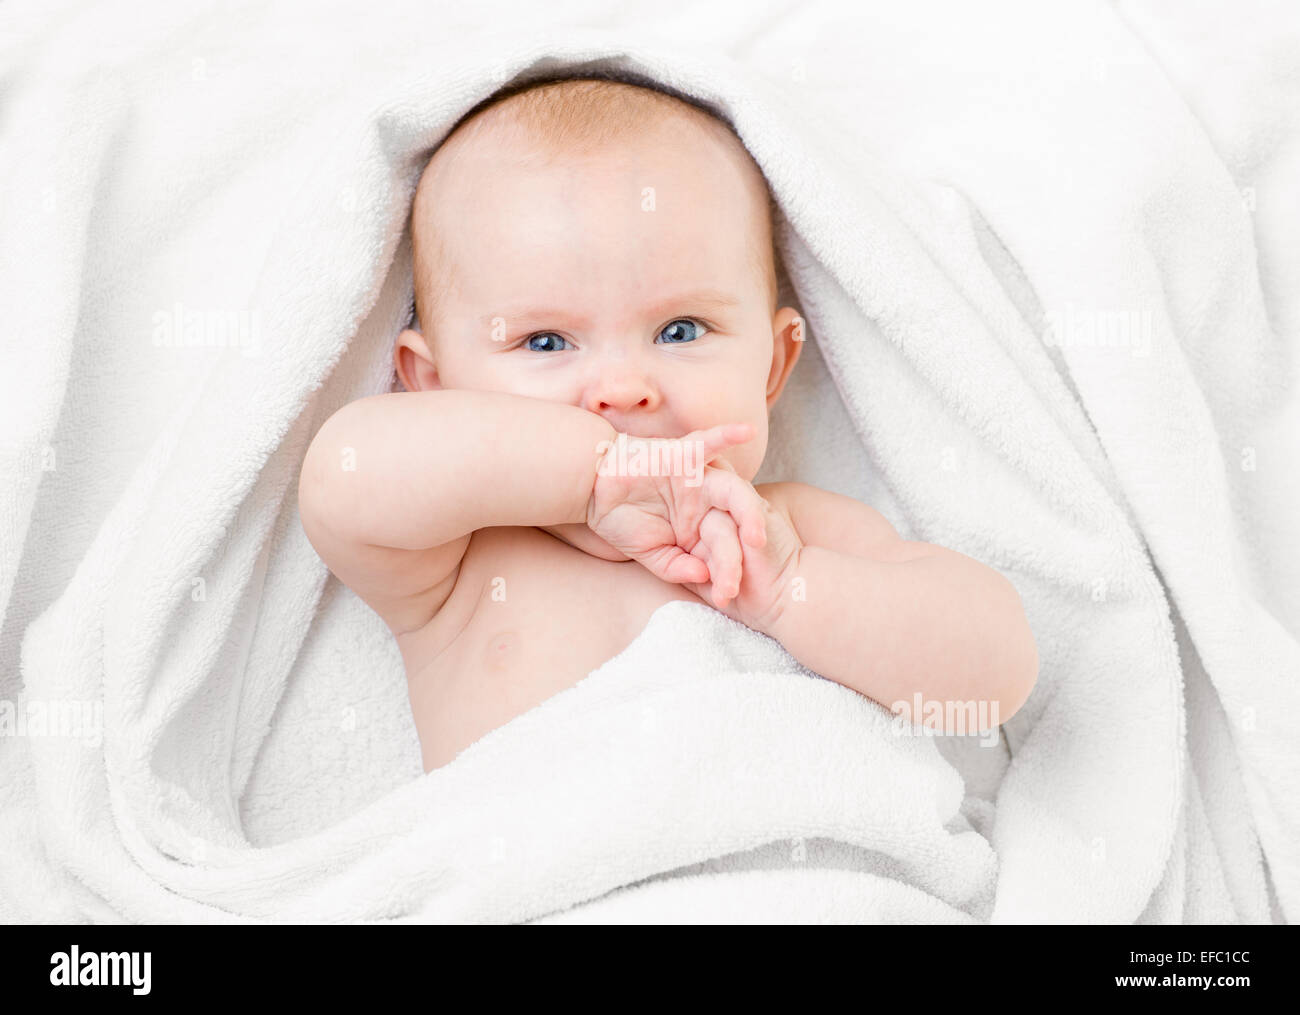 Carino il bambino giacente su asciugamano bianco e aspirazione di propria mano Foto Stock